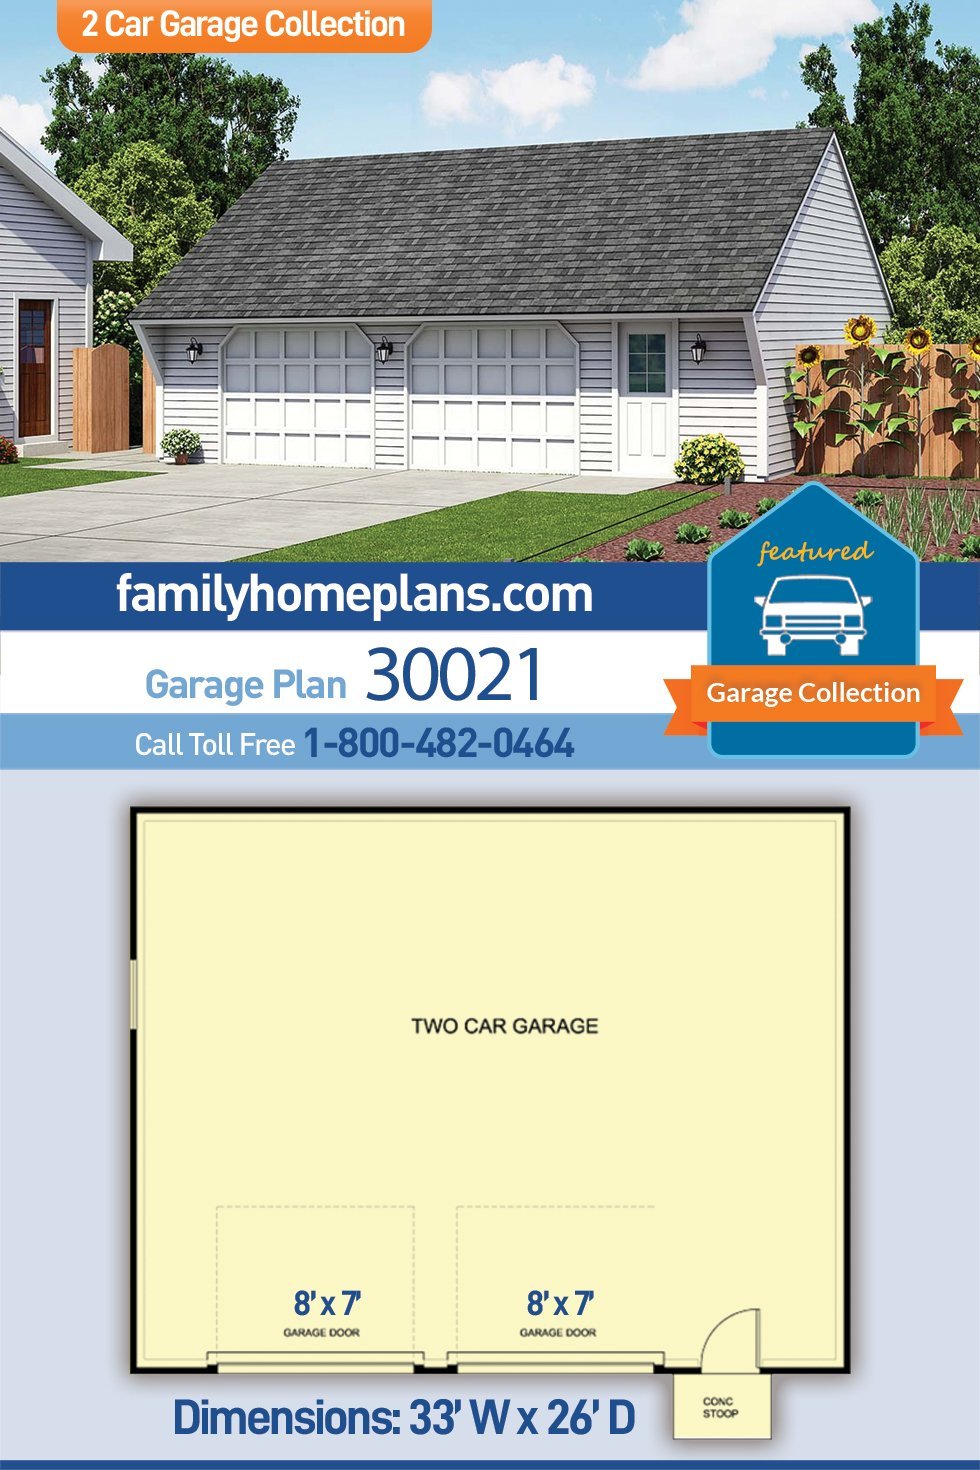 Garage Plan 30021 - 2 Car Garage